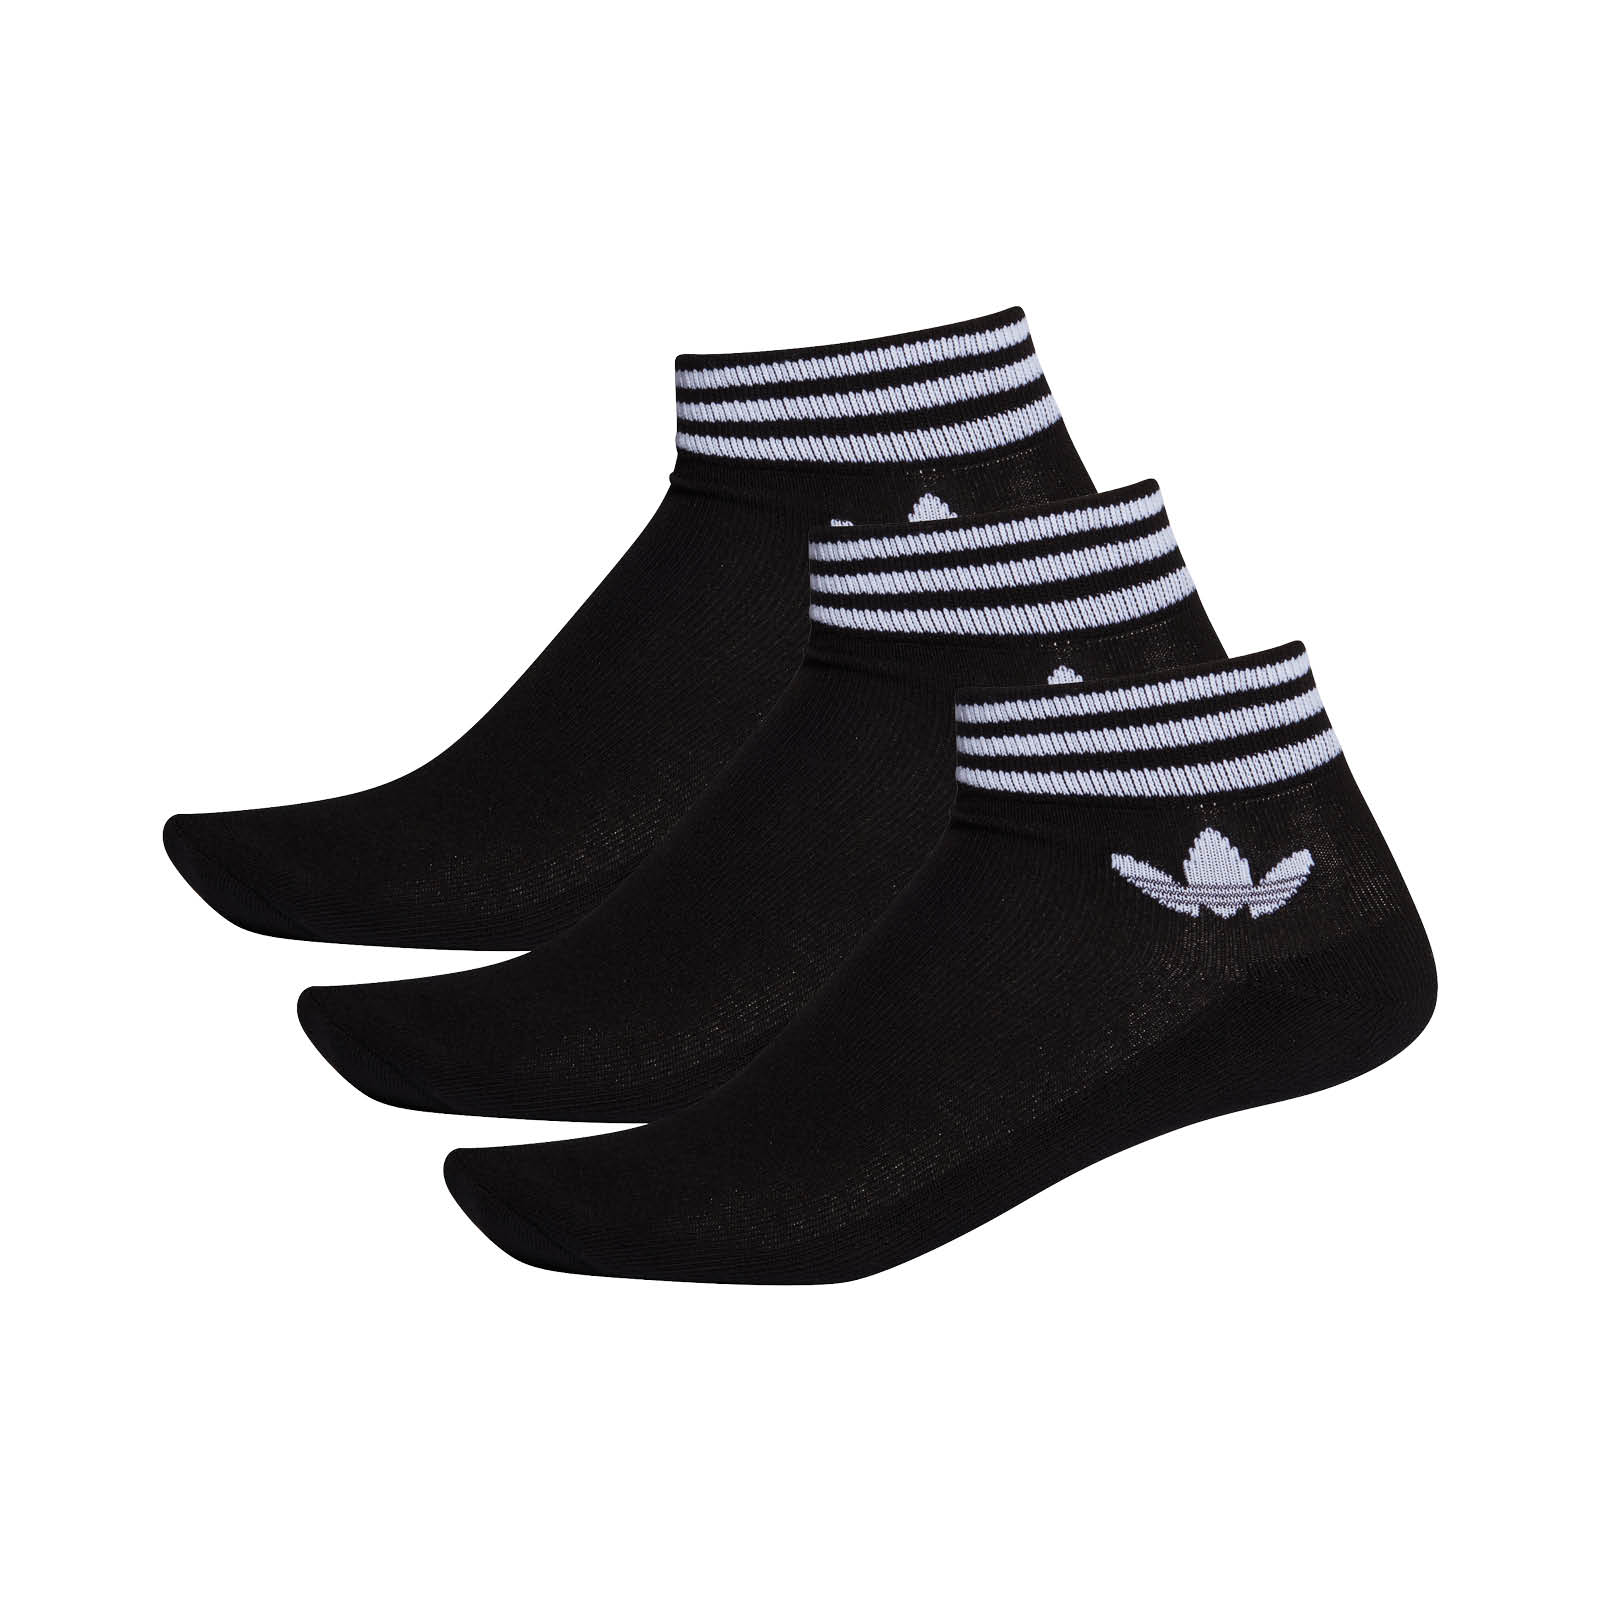 Adidas Trefoil Ankle Socks 3 pairs EE1151